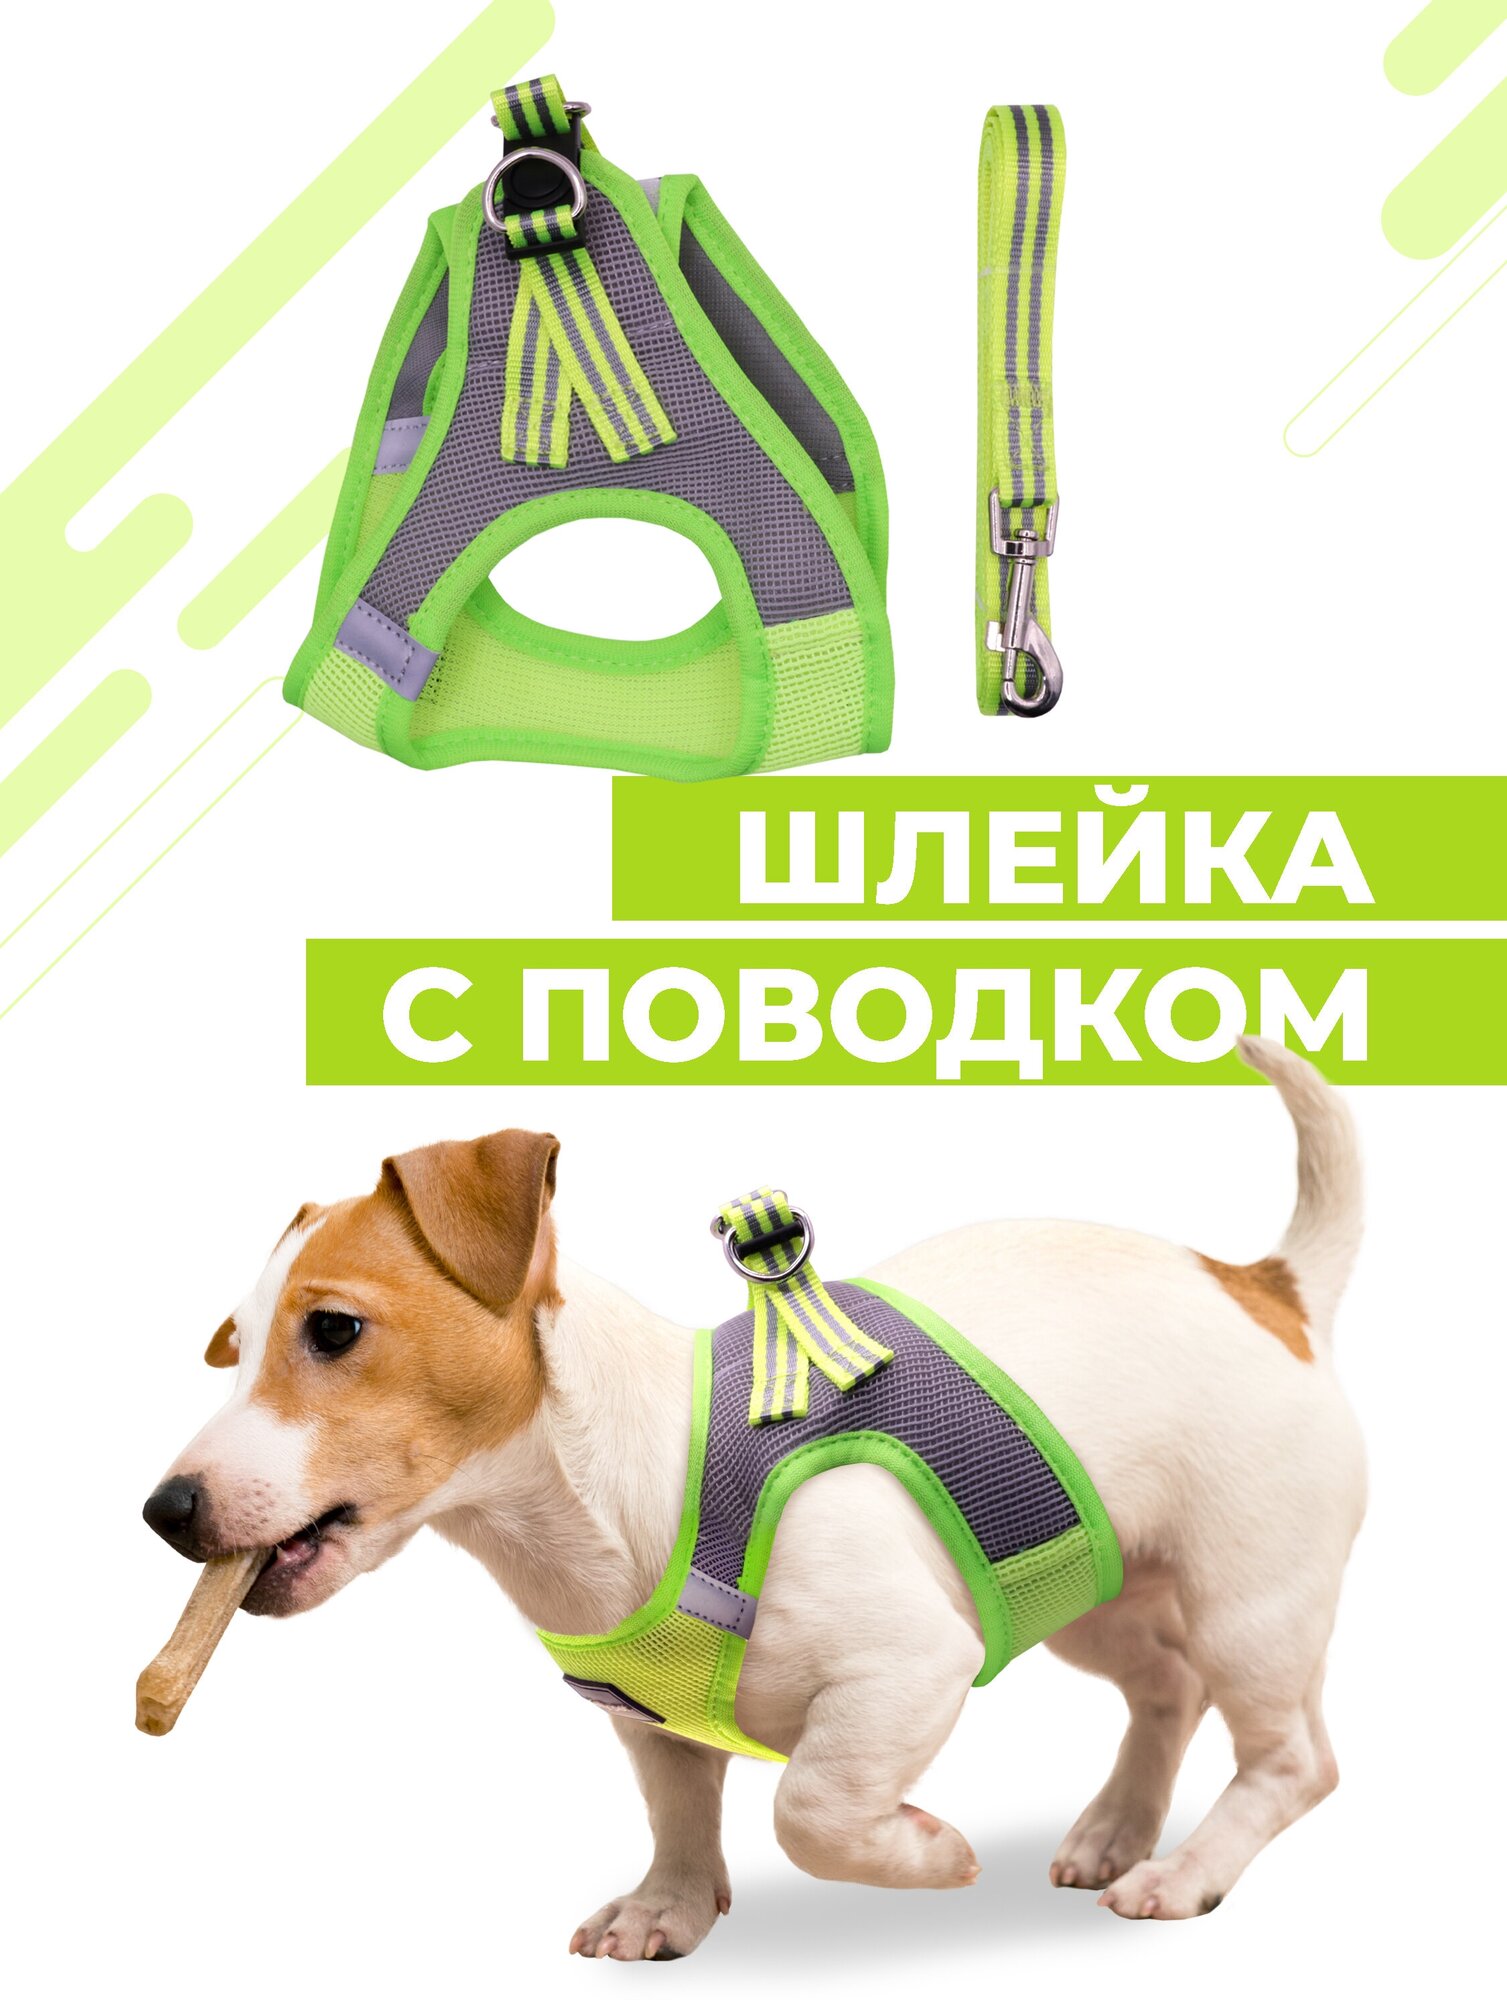 Шлейка для собак и кошек Boomshakalaka, со светоотражающими элементами, с поводком 120 см, размер XXS(обхват 28-32 см), вес до 3 кг, цвет желто-зеленый